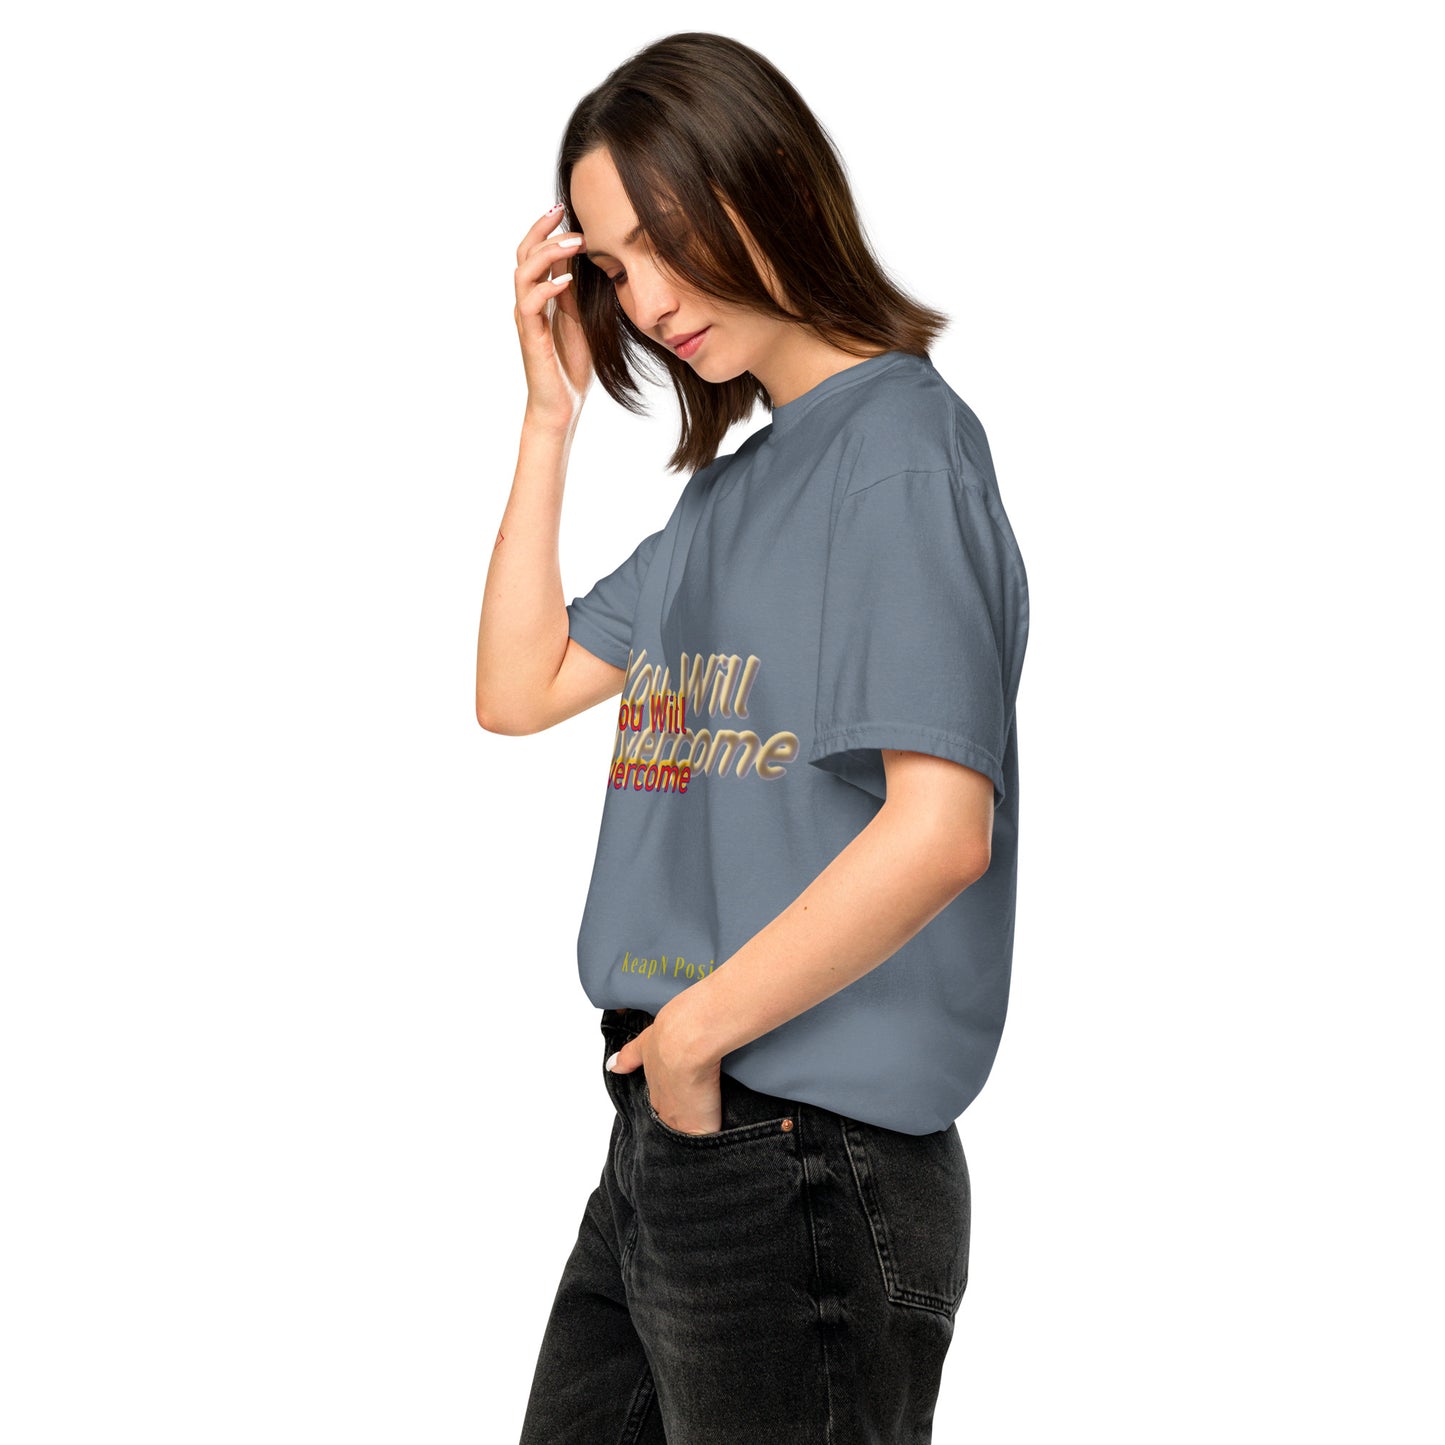 .Garment-dyed Heavyweight Unisex T-shirt